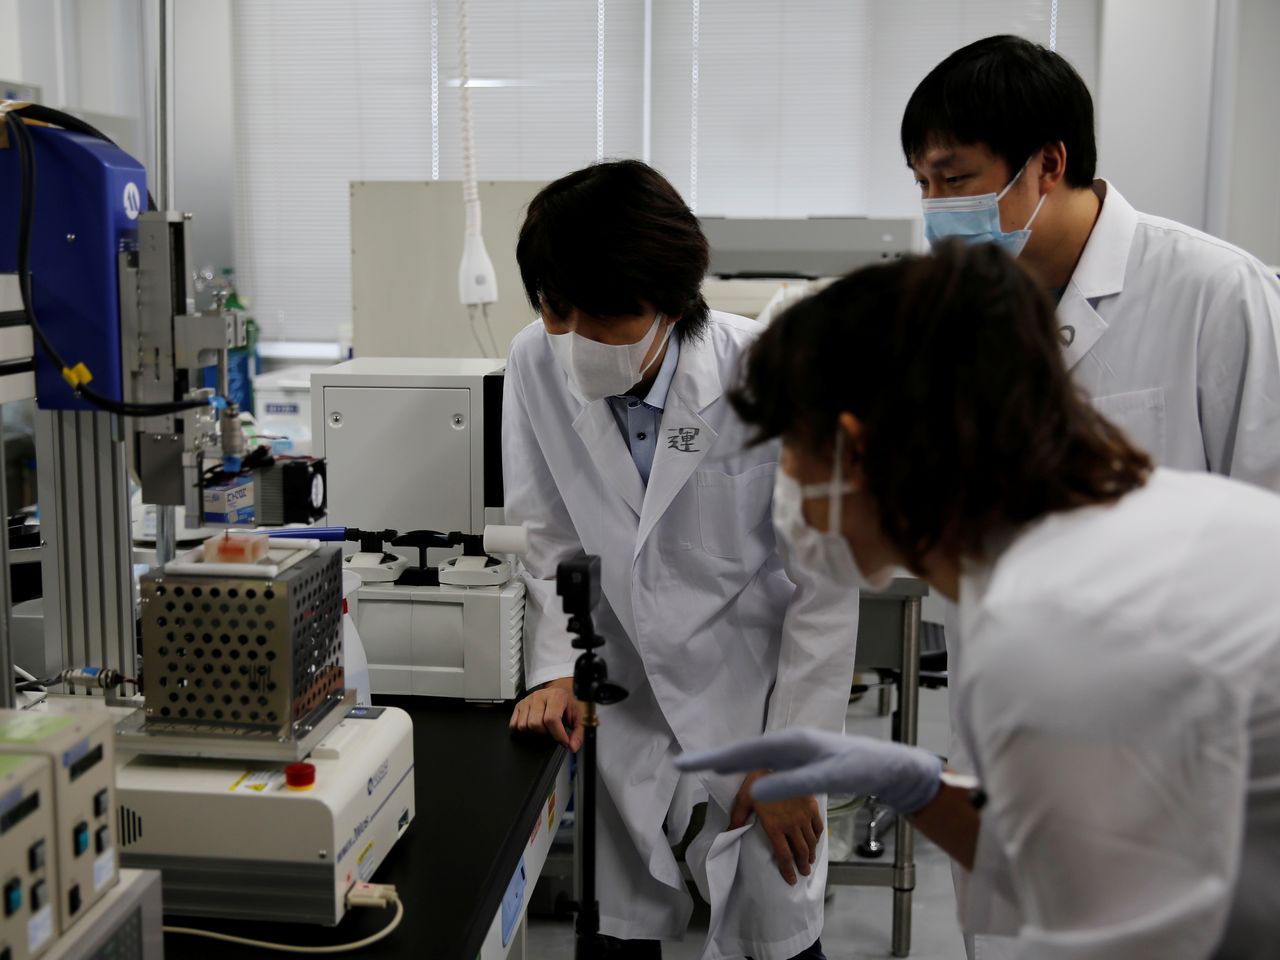 الأستاذ بجامعة أوساكا ميتسوساكي وزملاؤه الباحثون ينظرون إلى طابعة ثلاثية الأبعاد في مختبر بجامعة في سويتا، محافظة أوساكا، اليابان، 5 أكتوبر/ تشرين الأول 2021. تم التقاط الصورة في 5 أكتوبر/ تشرين الأول 2021. رويترز/ أكيرا توموشيغي.